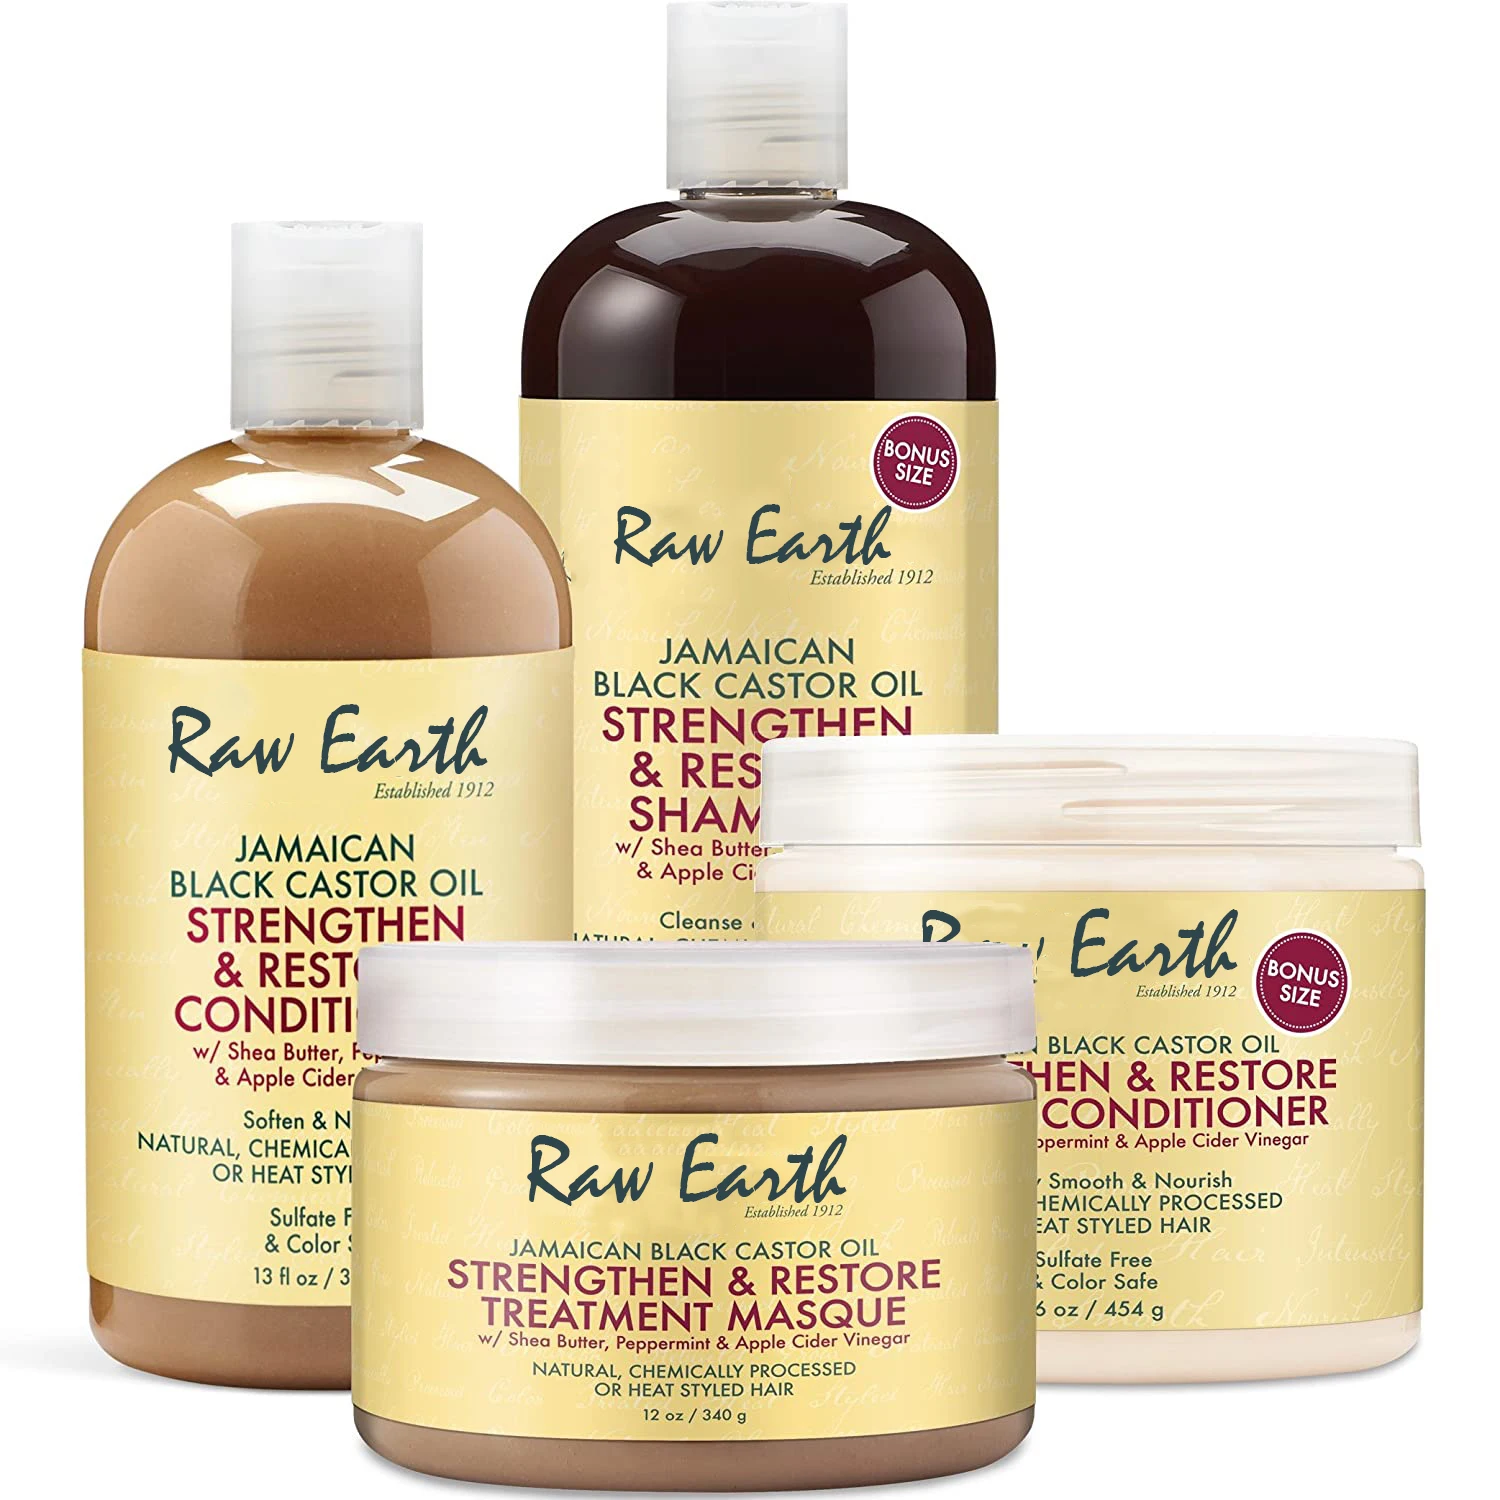 

Cheap high quality Private Label organic shampoo argan oil shampoo for hair loss treatment